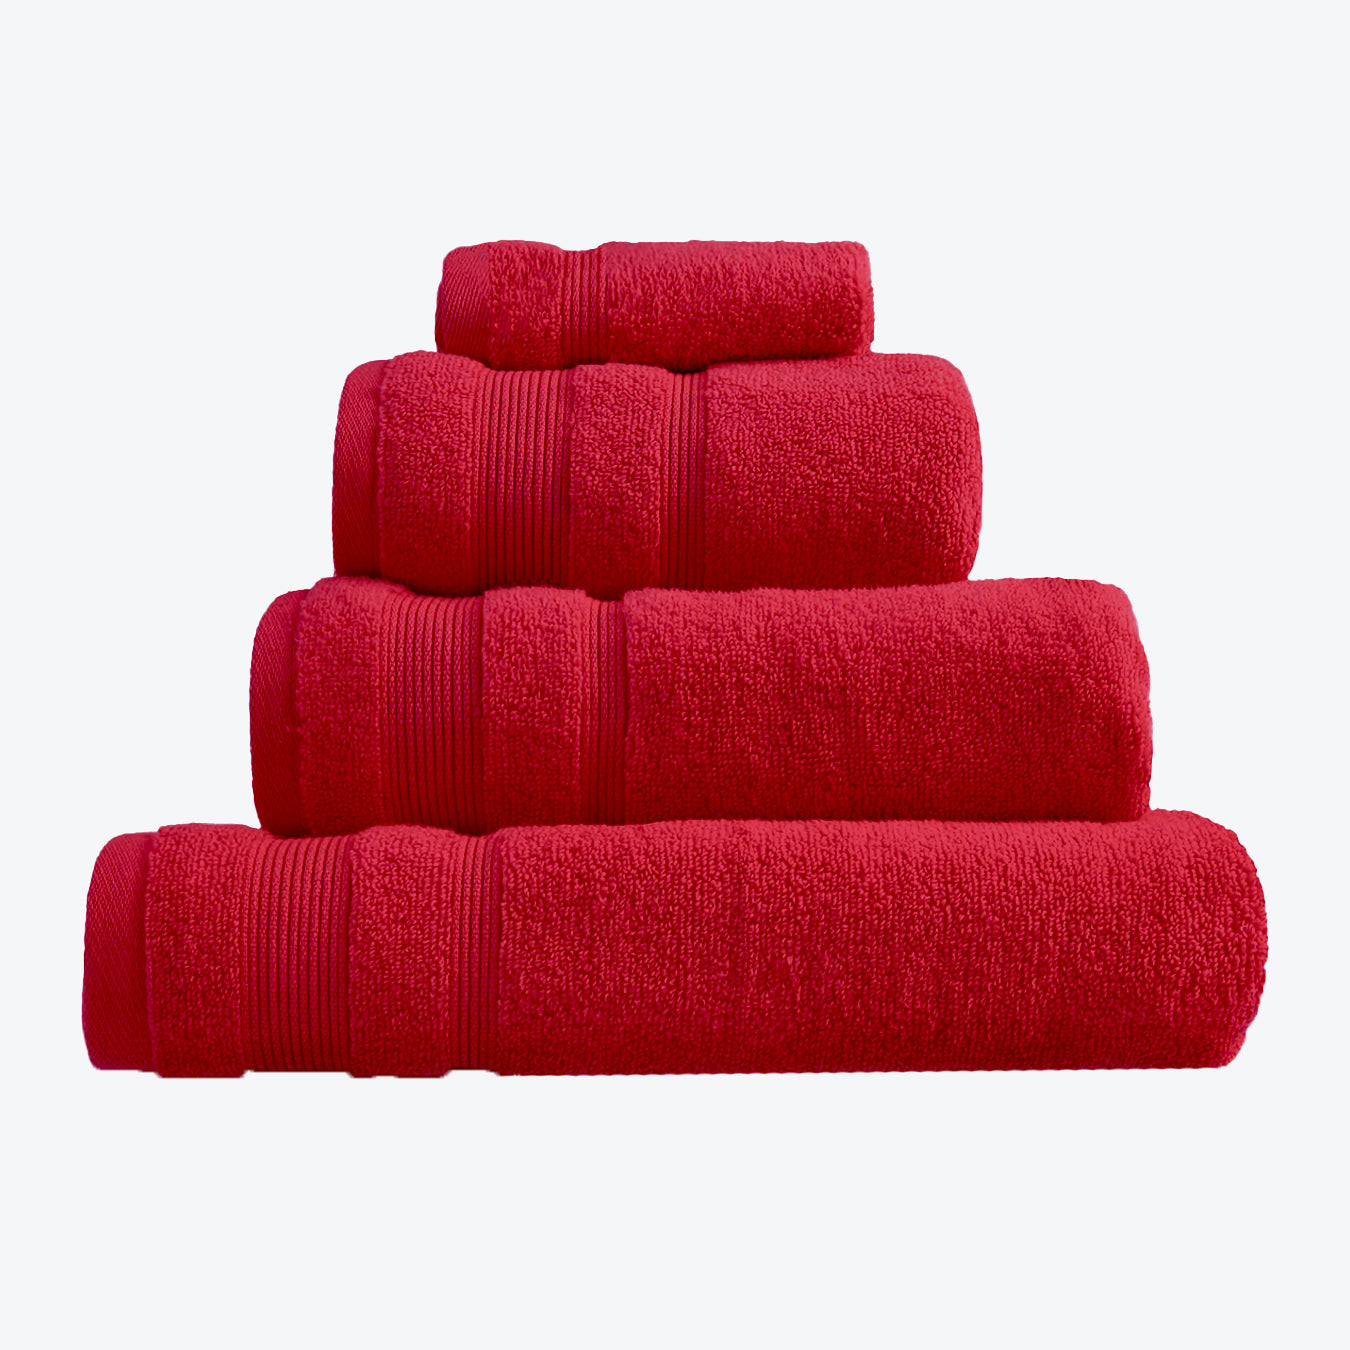 Cranberry Red Egyptian Cotton Towel Bale Set - Premium Zero Twist Bathroom Towels (Hand Towel, Bath Towel, Bath Sheet, face Cloths).